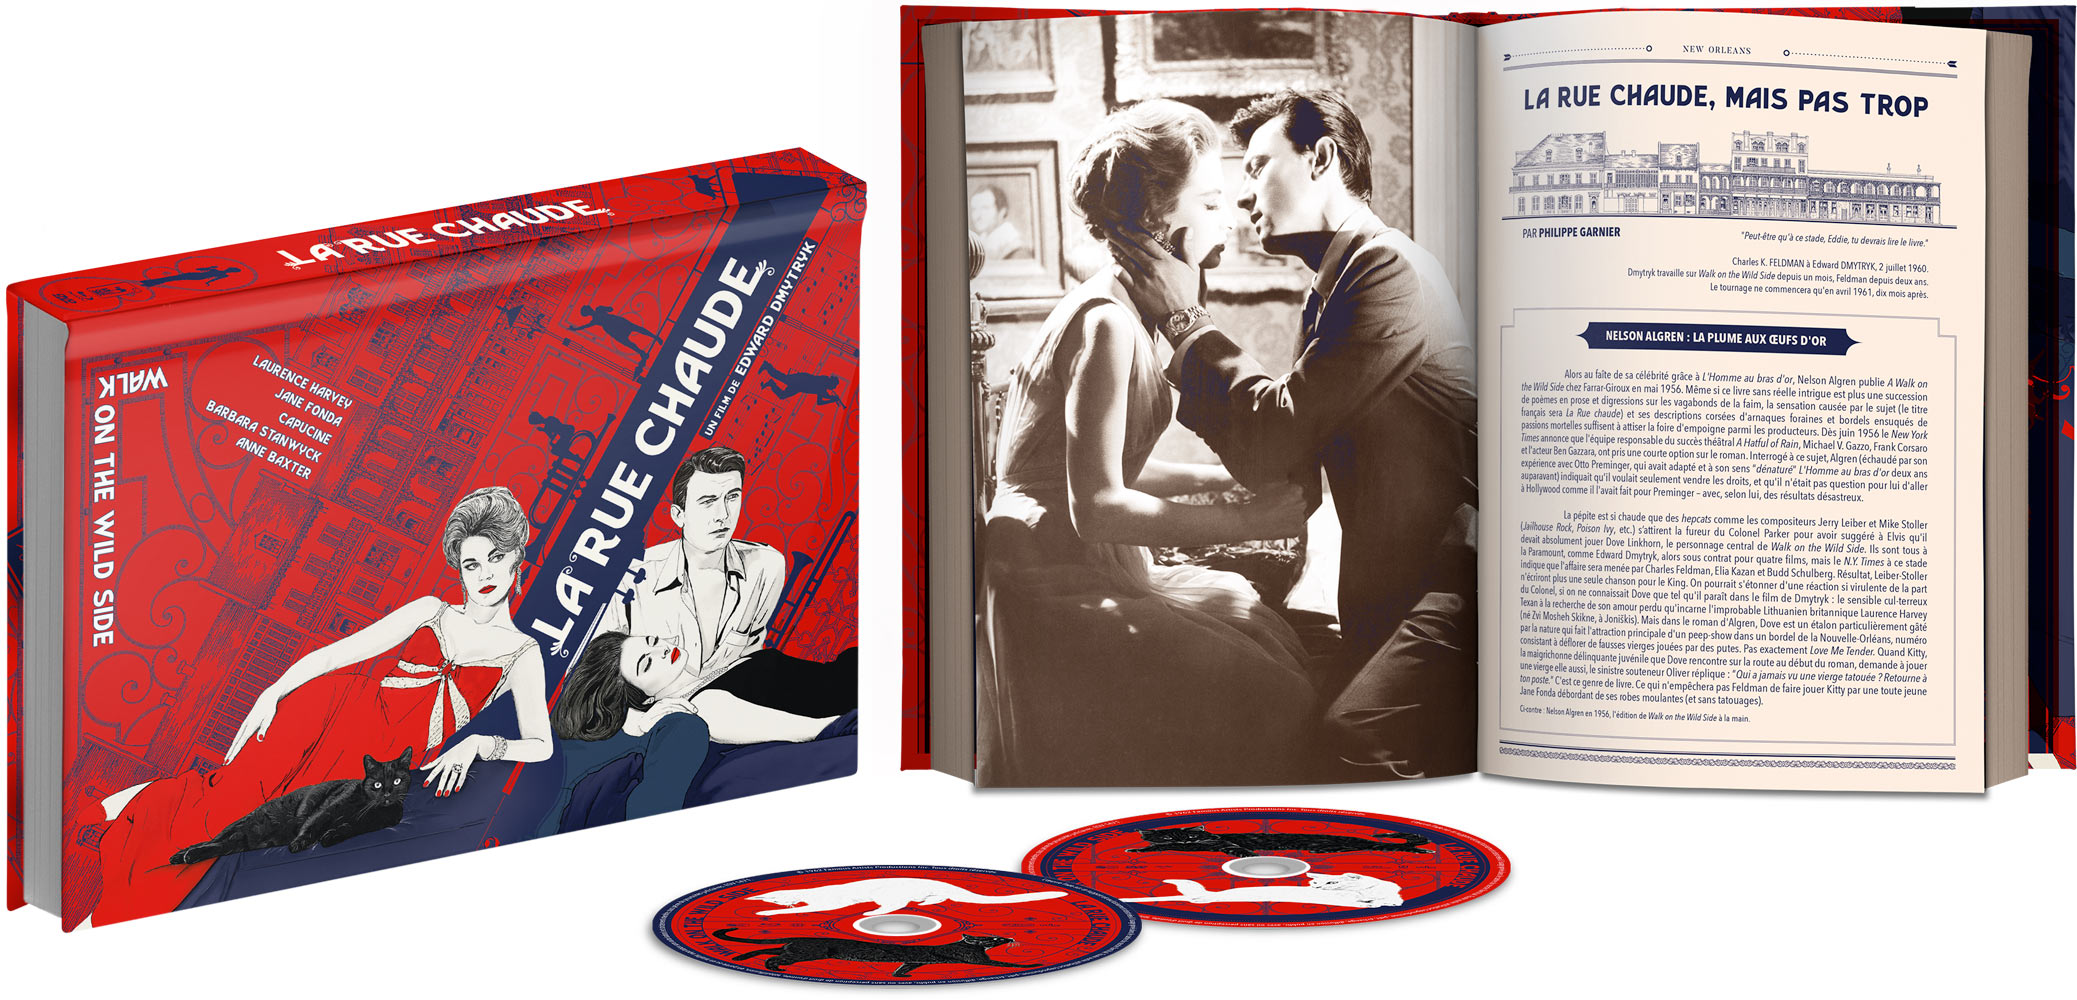 La Rue chaude - Mediabook Blu-ray + DVD